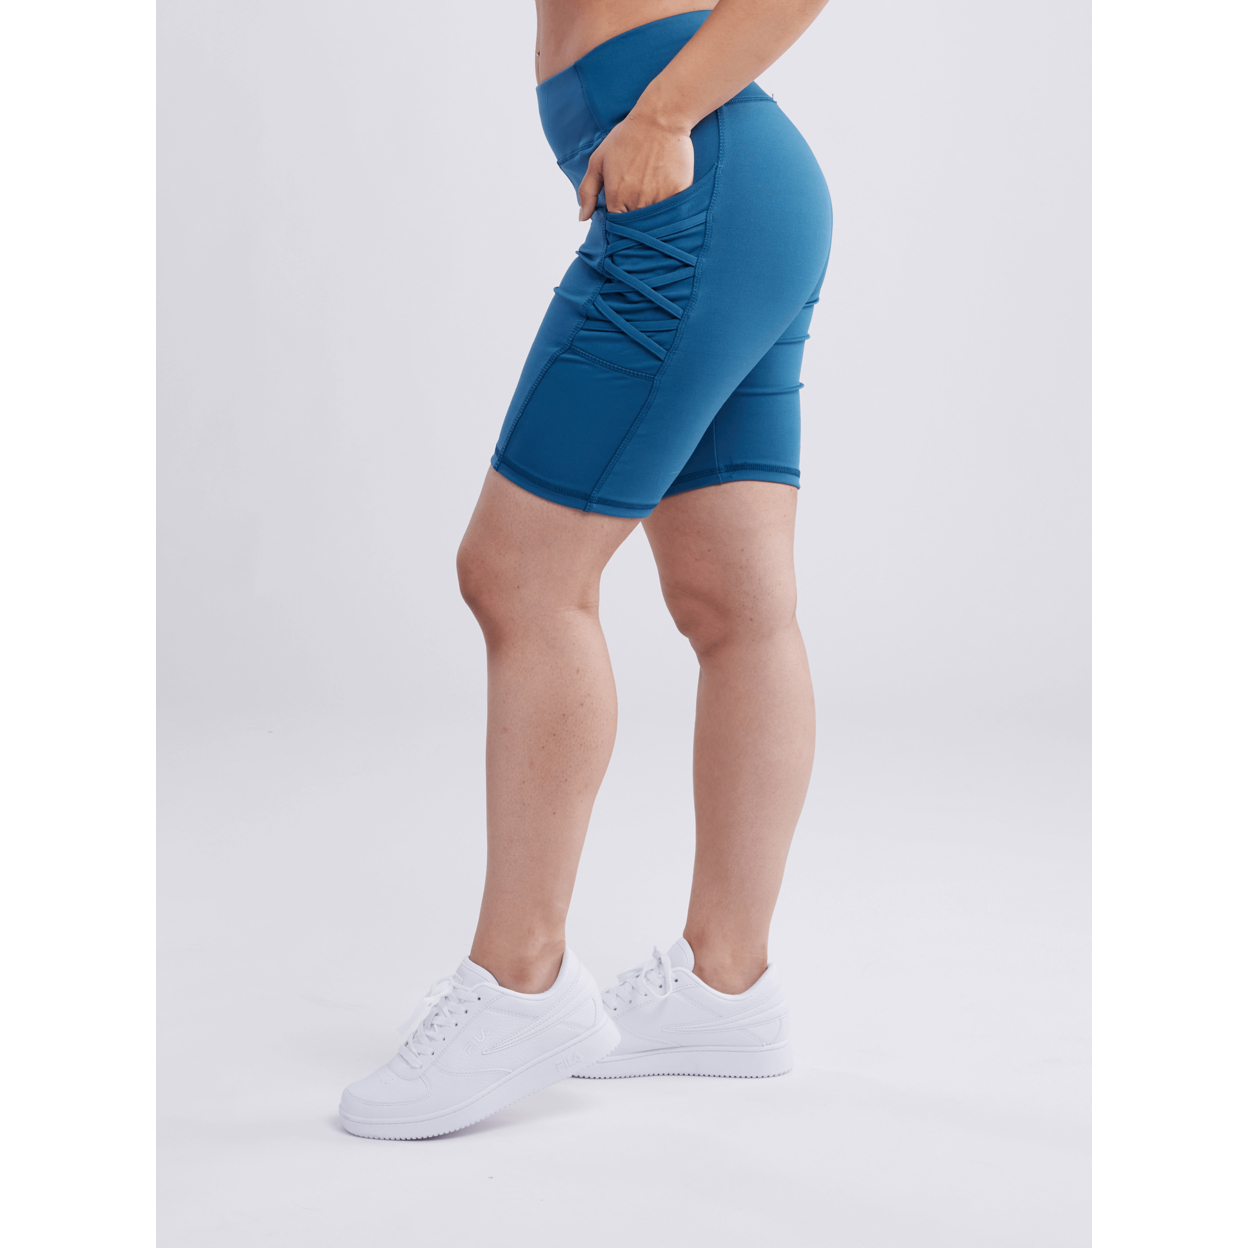 High-Waisted Workout Shorts With Pockets & Criss Cross Design - Denim Blue, Small / Medium